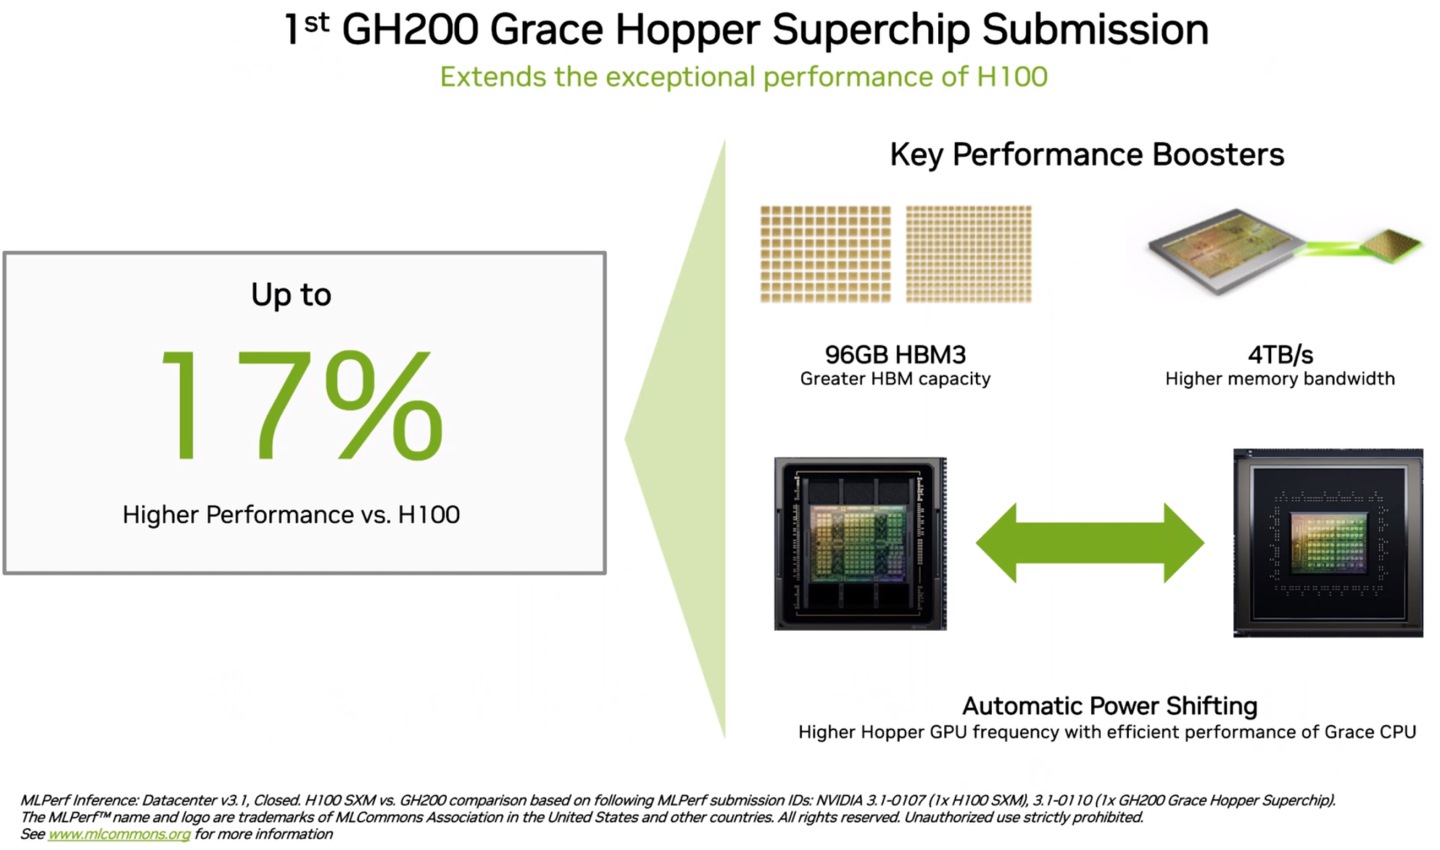 GH200具有更大容量的記憶體，也支援處理器與GPU之間的動態電力調配，效能最高能較H100提升17%。